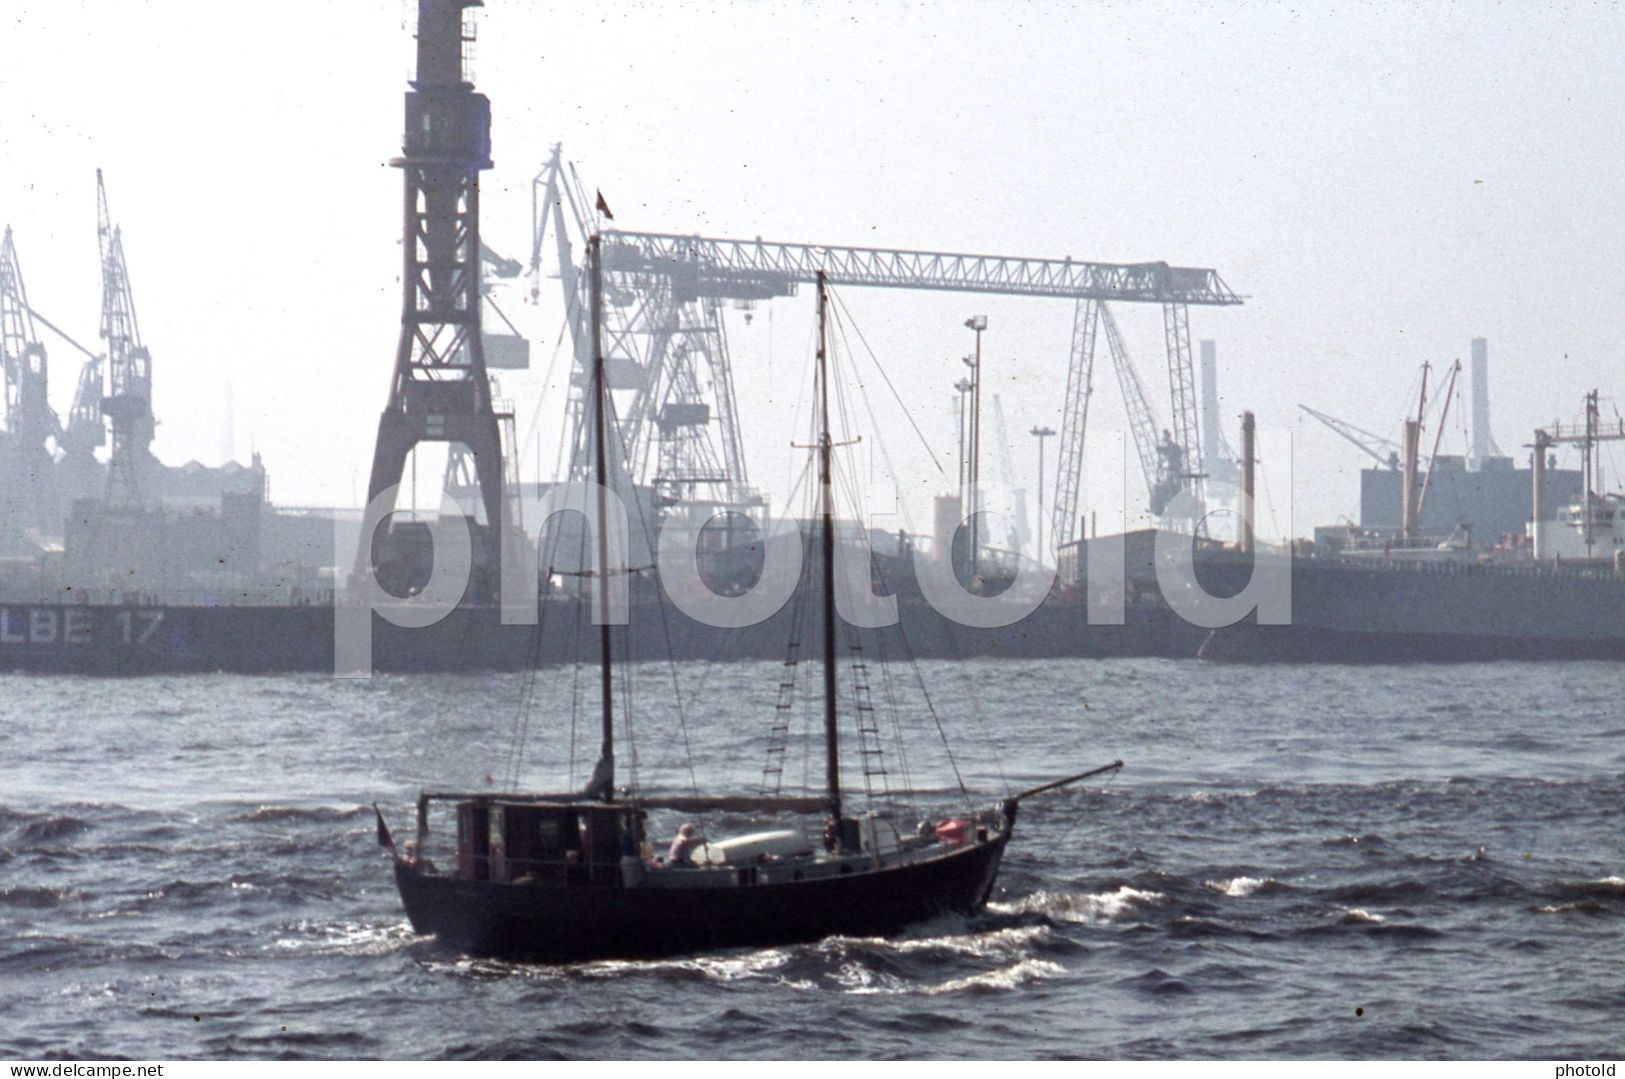 4 SLIDES SET 1970s SHIP VESSEL PORT HAMBURG GERMANY 35mm ORIGINAL AMATEUR DIAPOSITIVE SLIDE Not PHOTO No FOTO NB4108 - Diapositivas